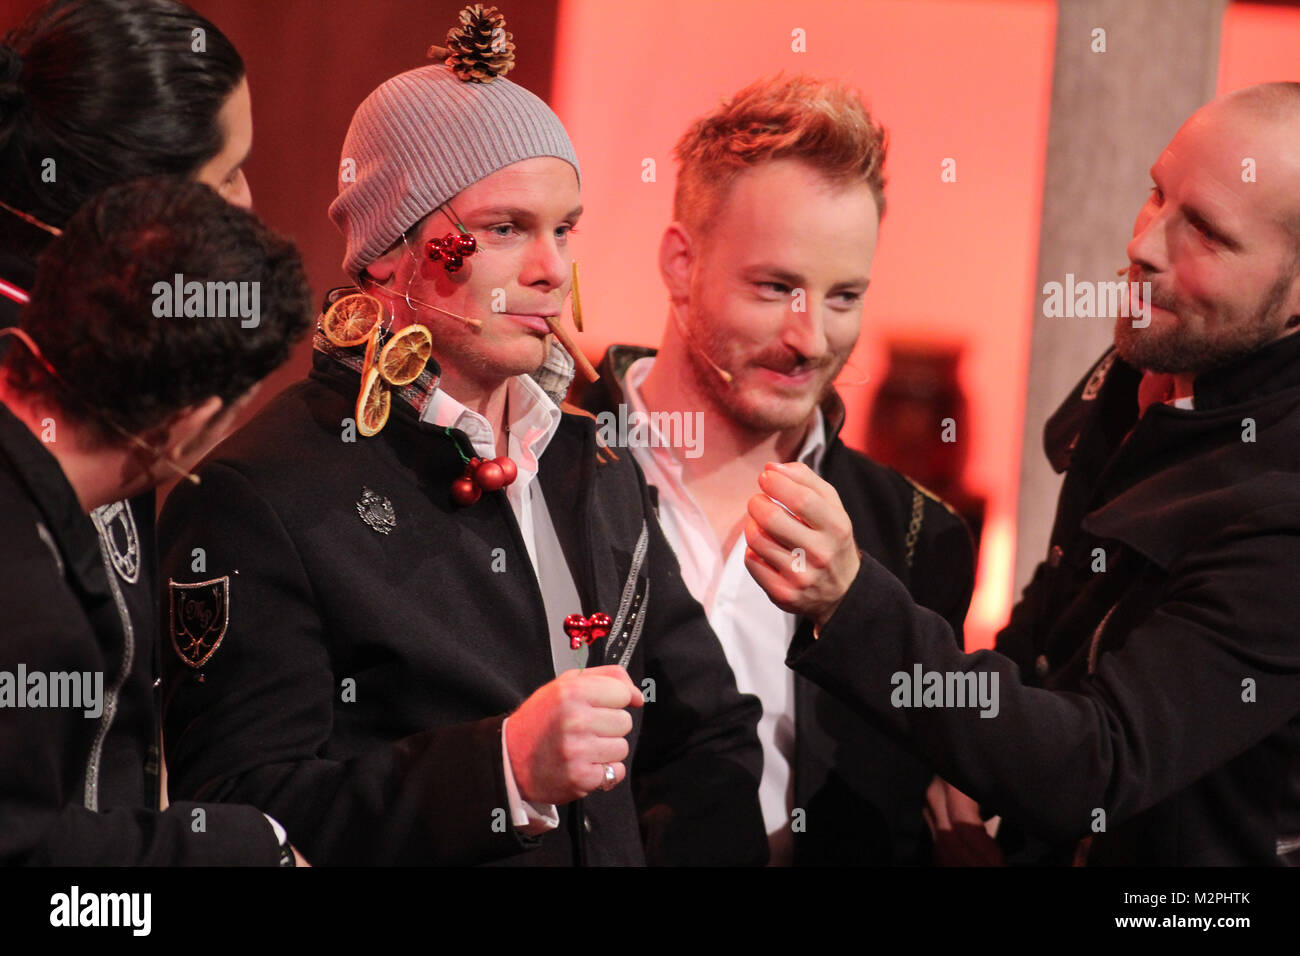 Voxxclub, Die grosse Show der Weihnachtslieder, praesentiert von Stefanie Hertel (Ausstrahlung 05.12.2015), Suhl, 13.11.2015 Stock Photo